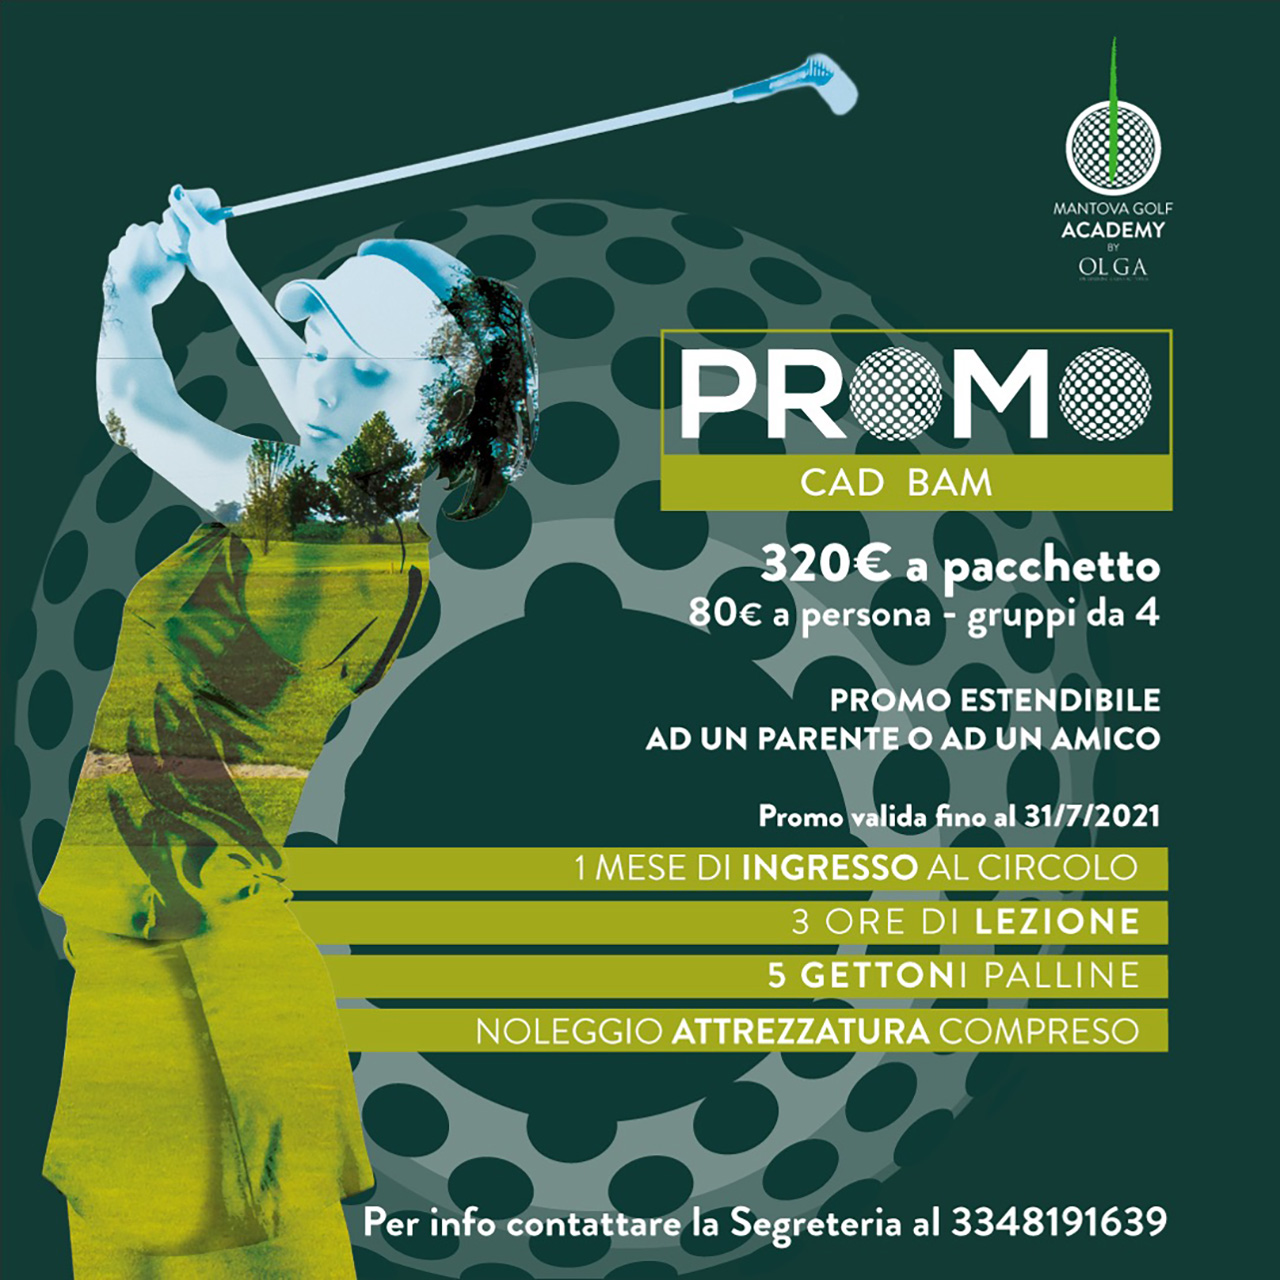 Promo Cad Bam Mantova Golf Club